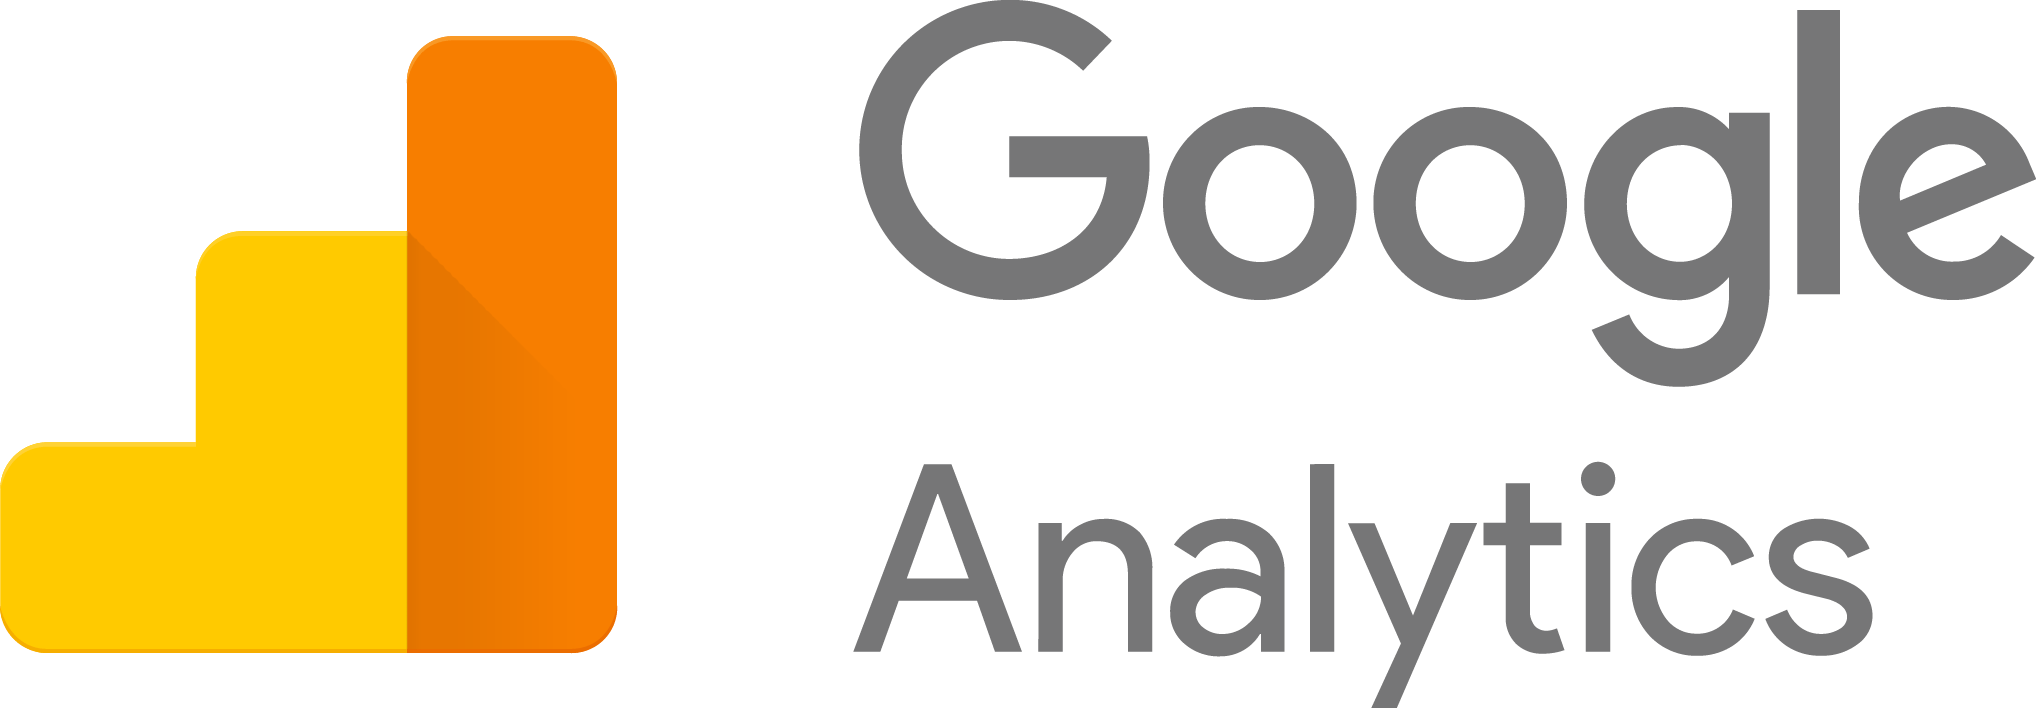 Google Analytics Logo Free Download